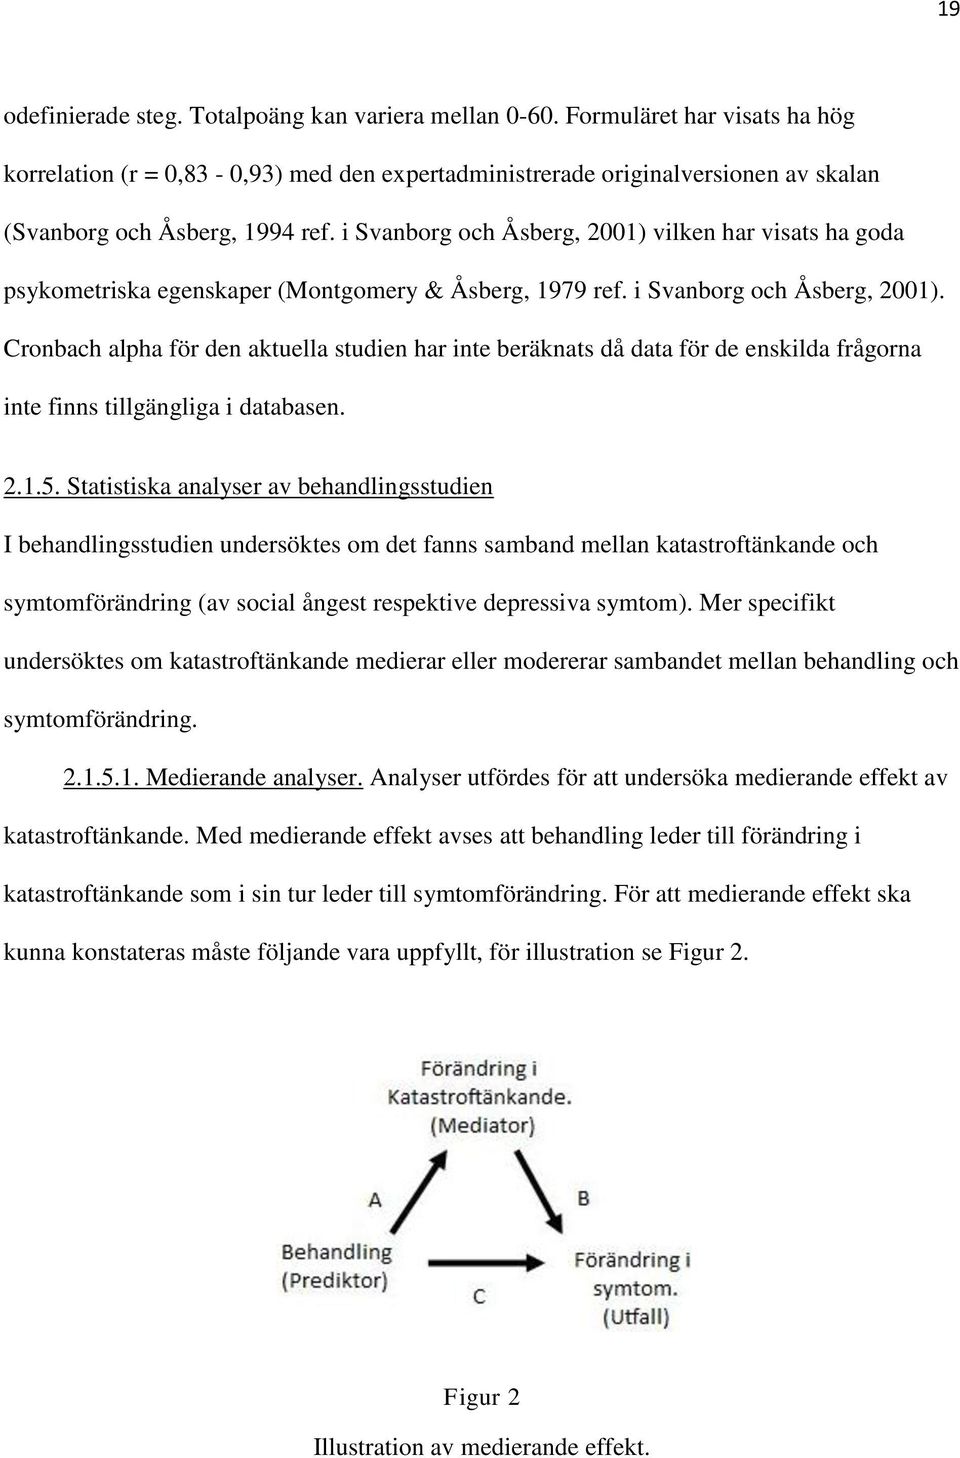 i Svanborg och Åsberg, 2001) vilken har visats ha goda psykometriska egenskaper (Montgomery & Åsberg, 1979 ref. i Svanborg och Åsberg, 2001).